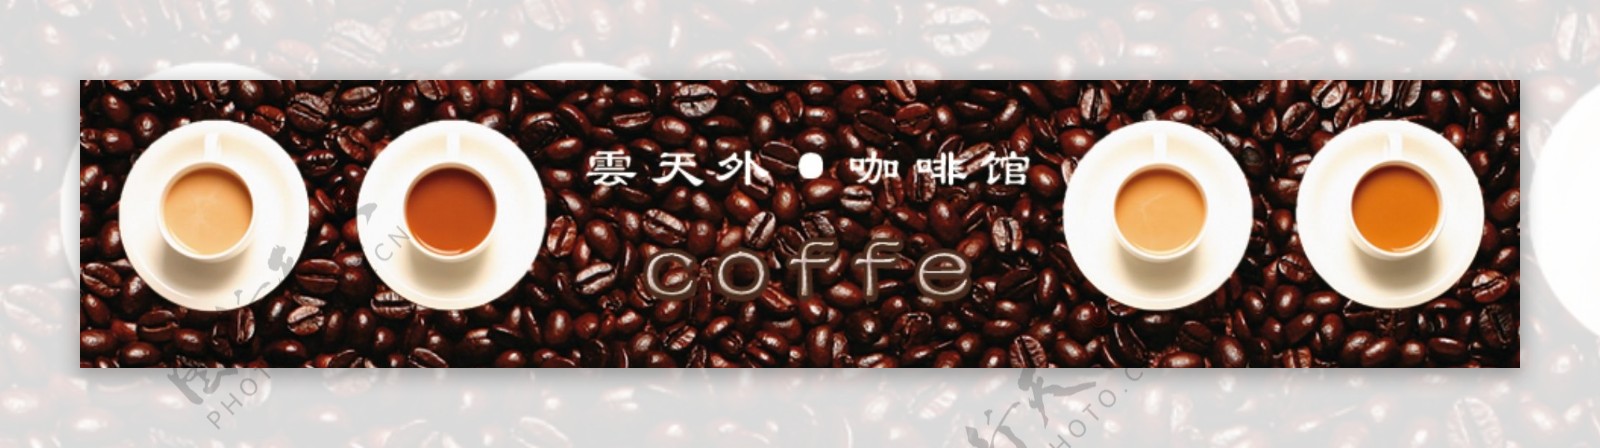 咖啡淘宝店标头设计